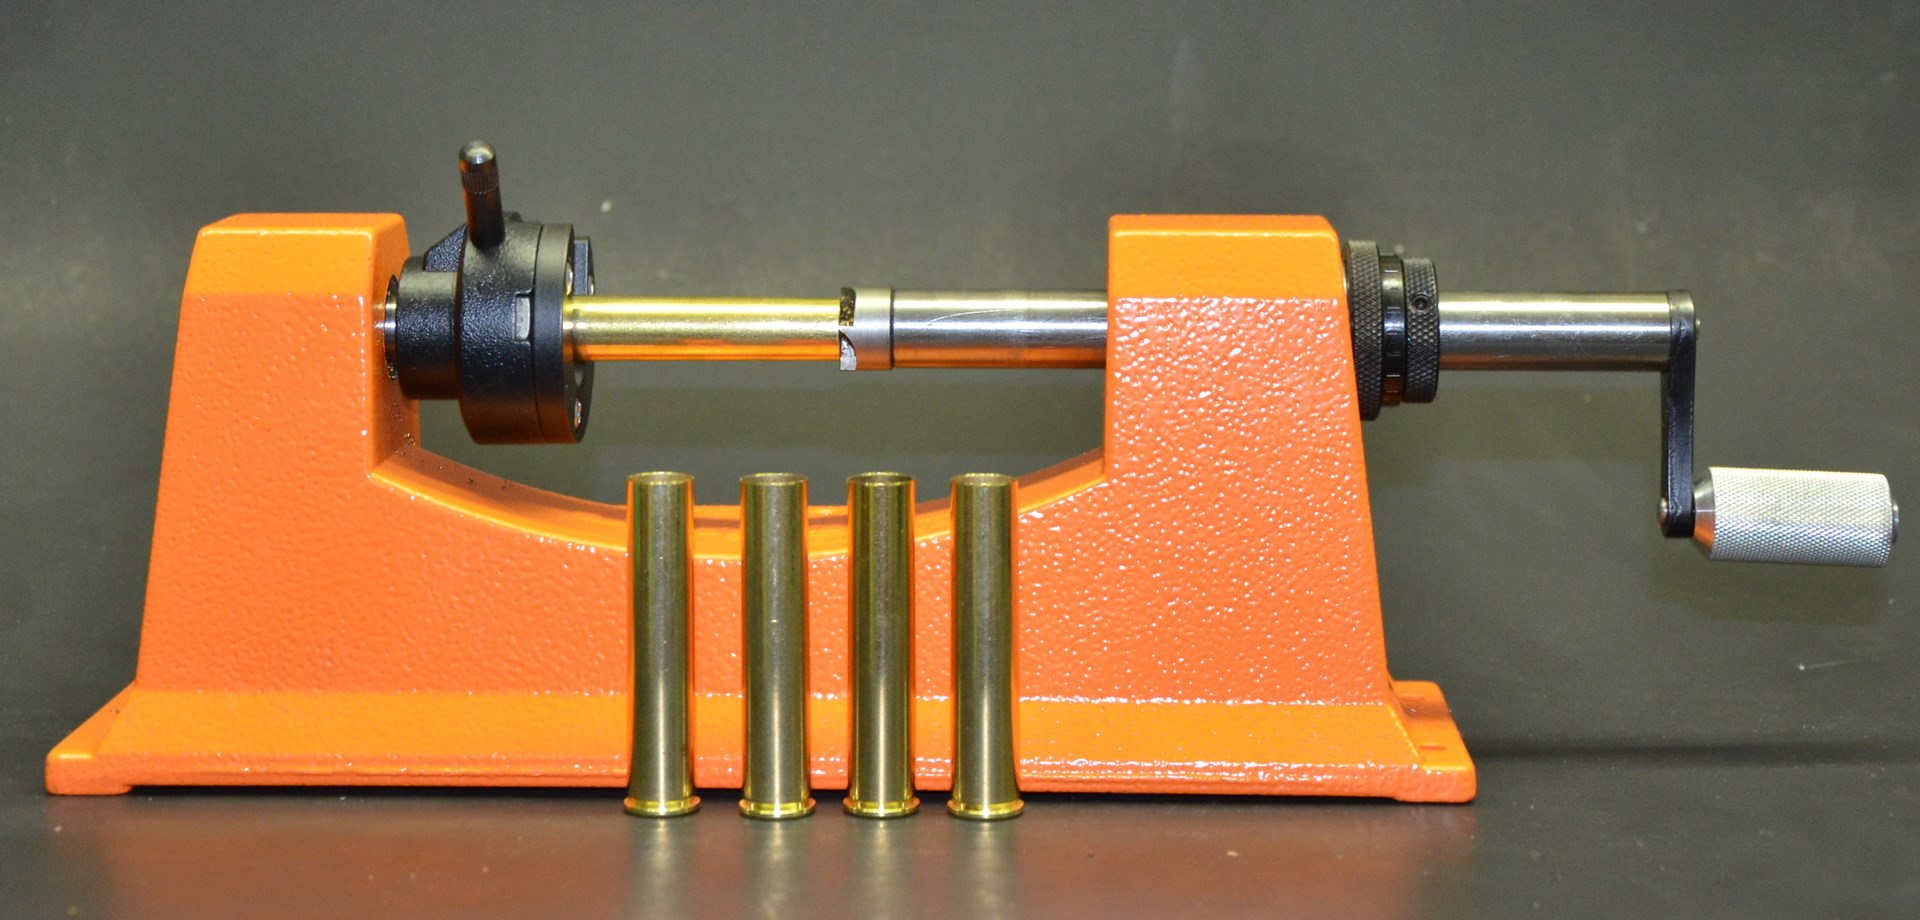 cartridge case trimmer station tools brass ammunition reloading handload